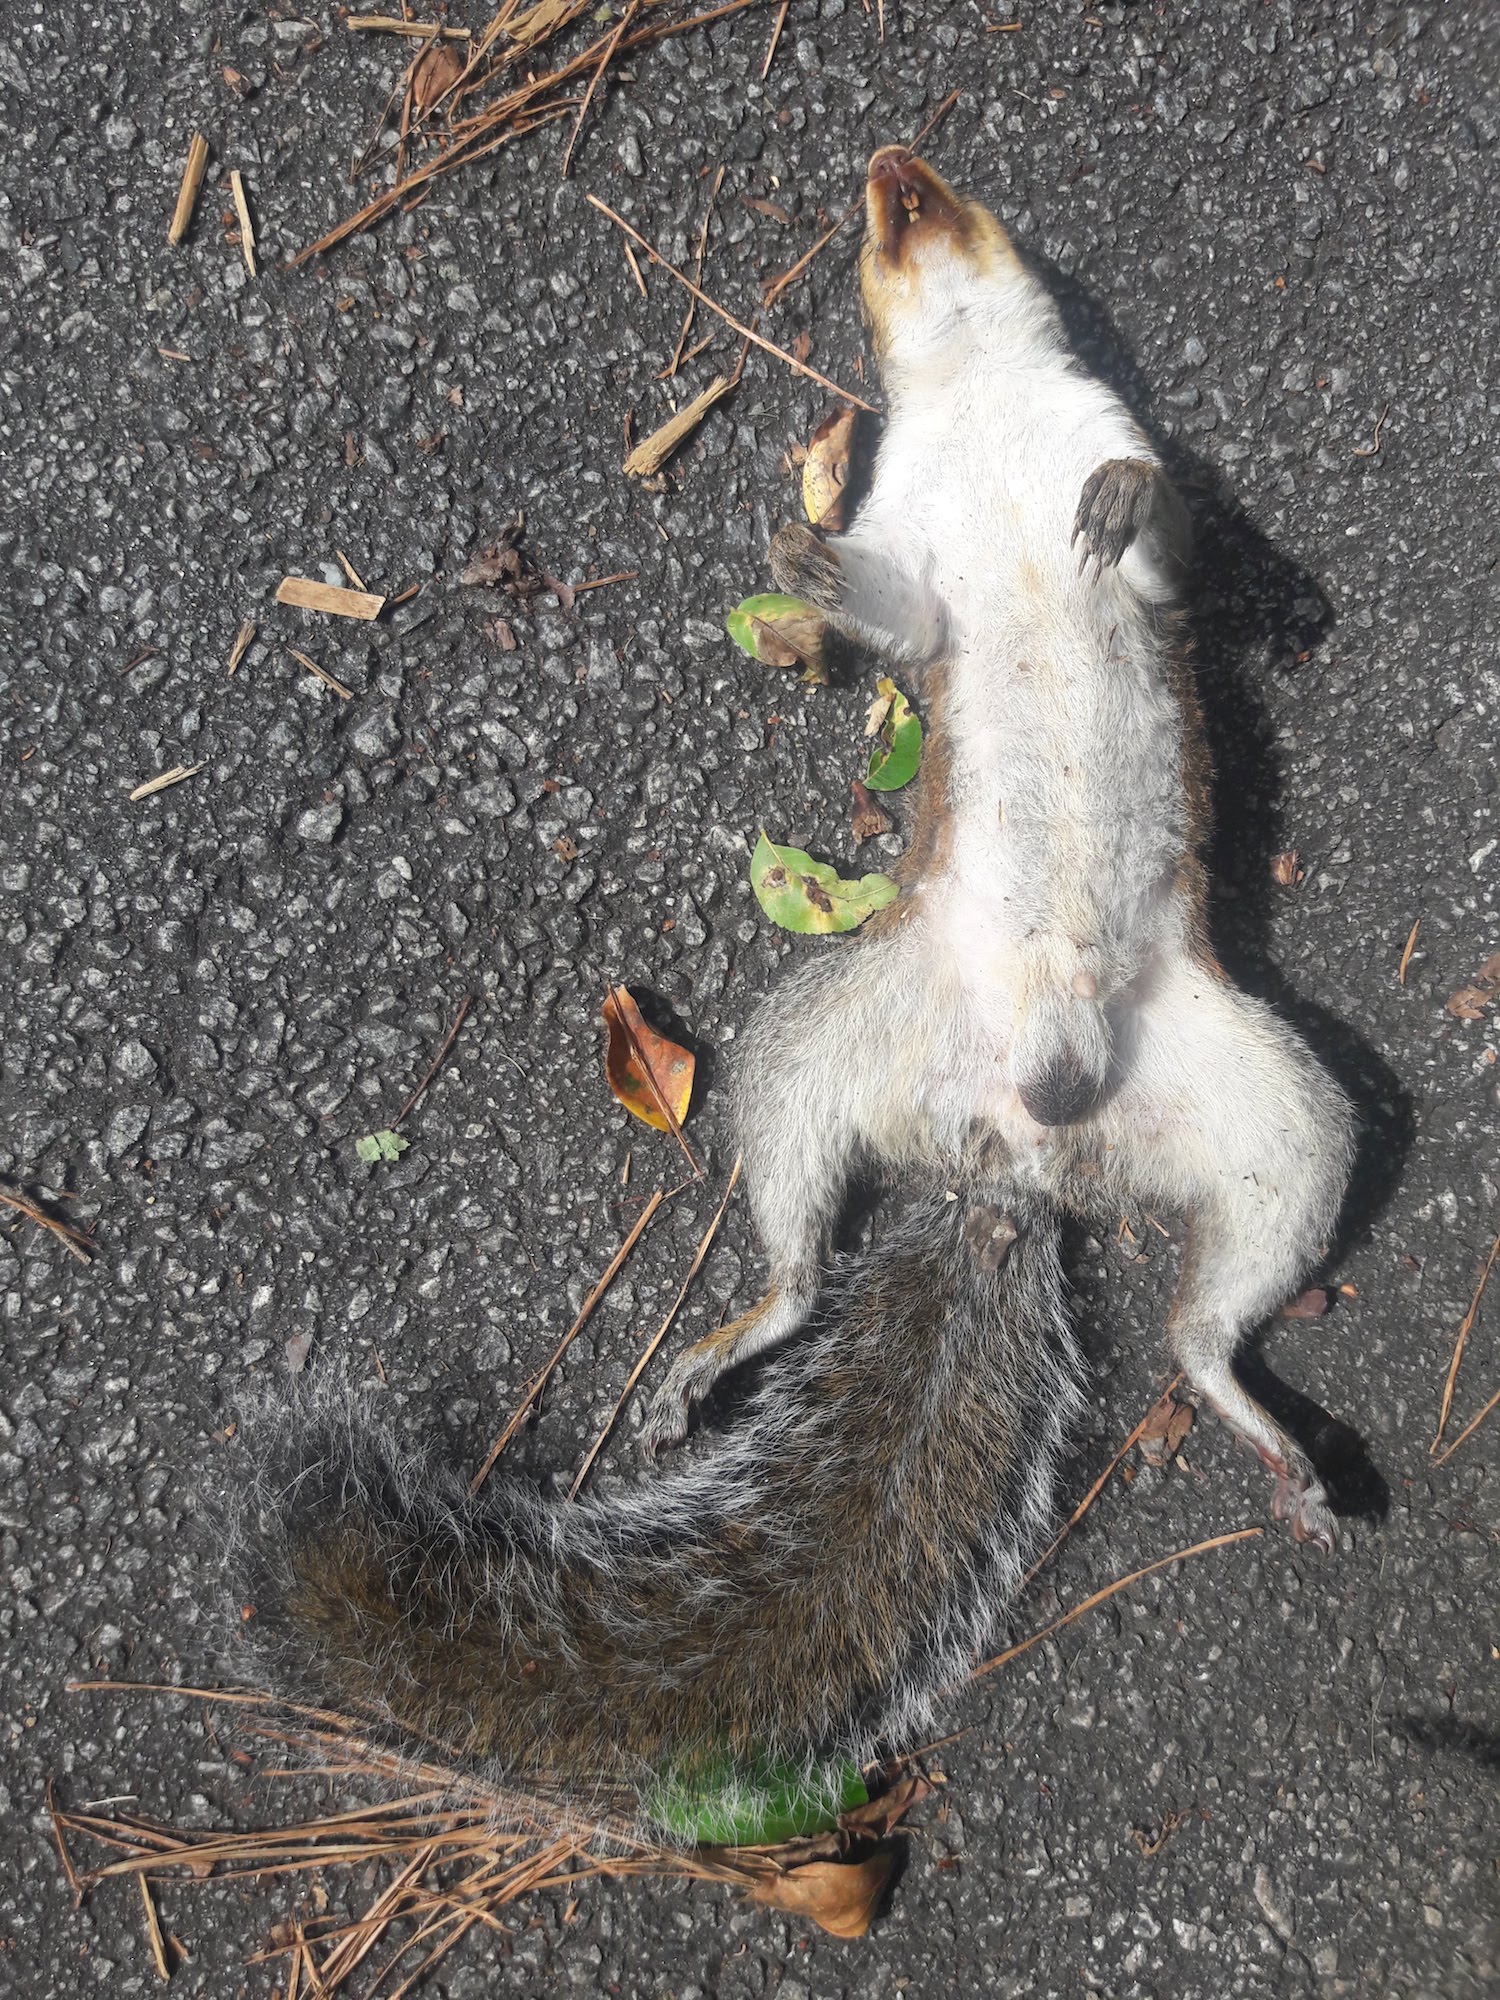 Dead squirrel